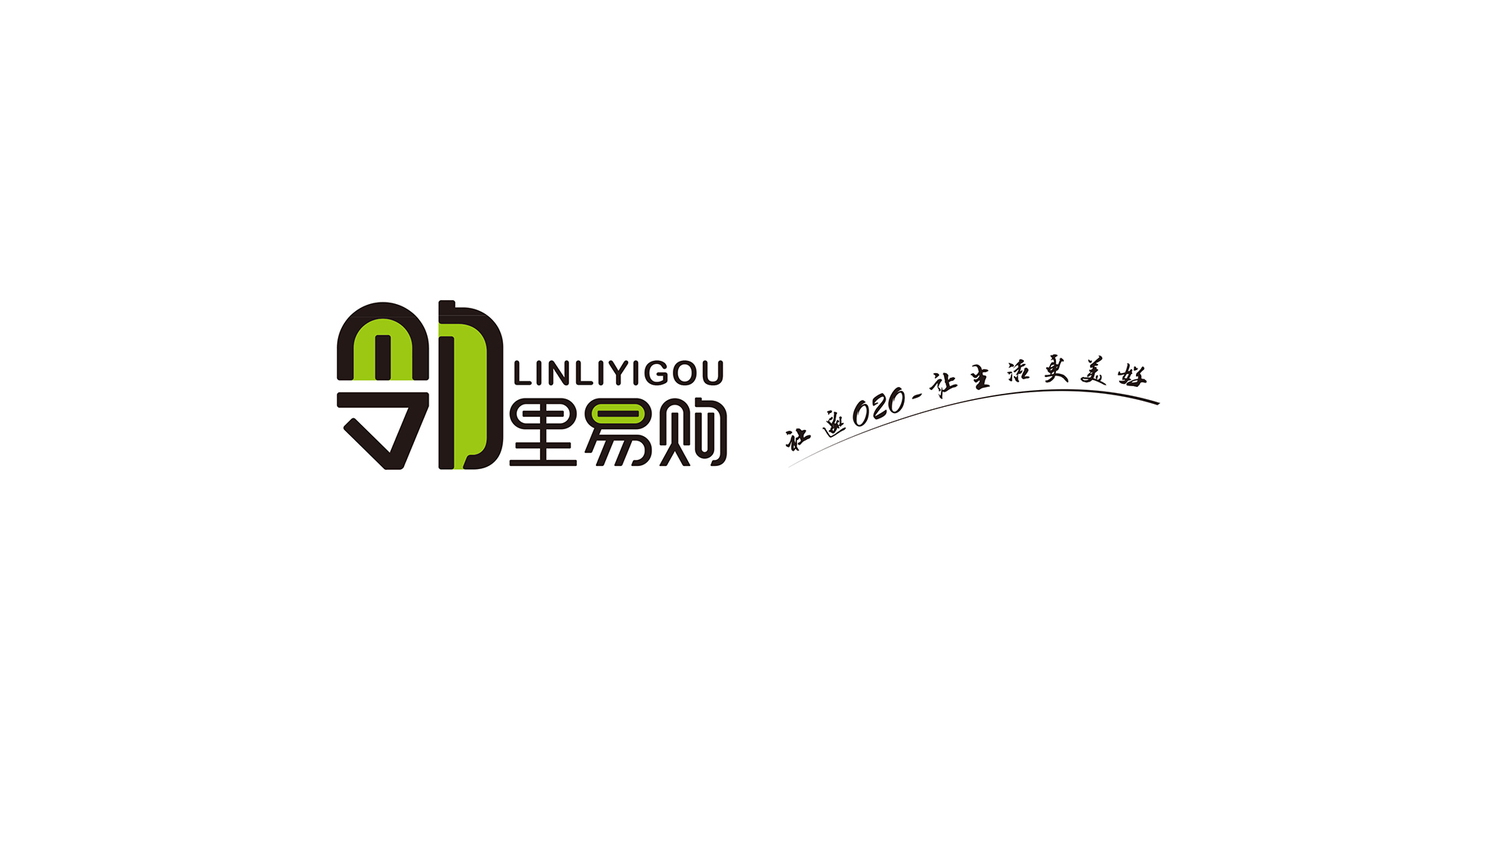 哈尔滨标志logo设计,哈尔滨包装设计,哈尔滨品牌策划,哈尔滨校园文化设计,哈尔滨广告设计,哈尔滨VI设计